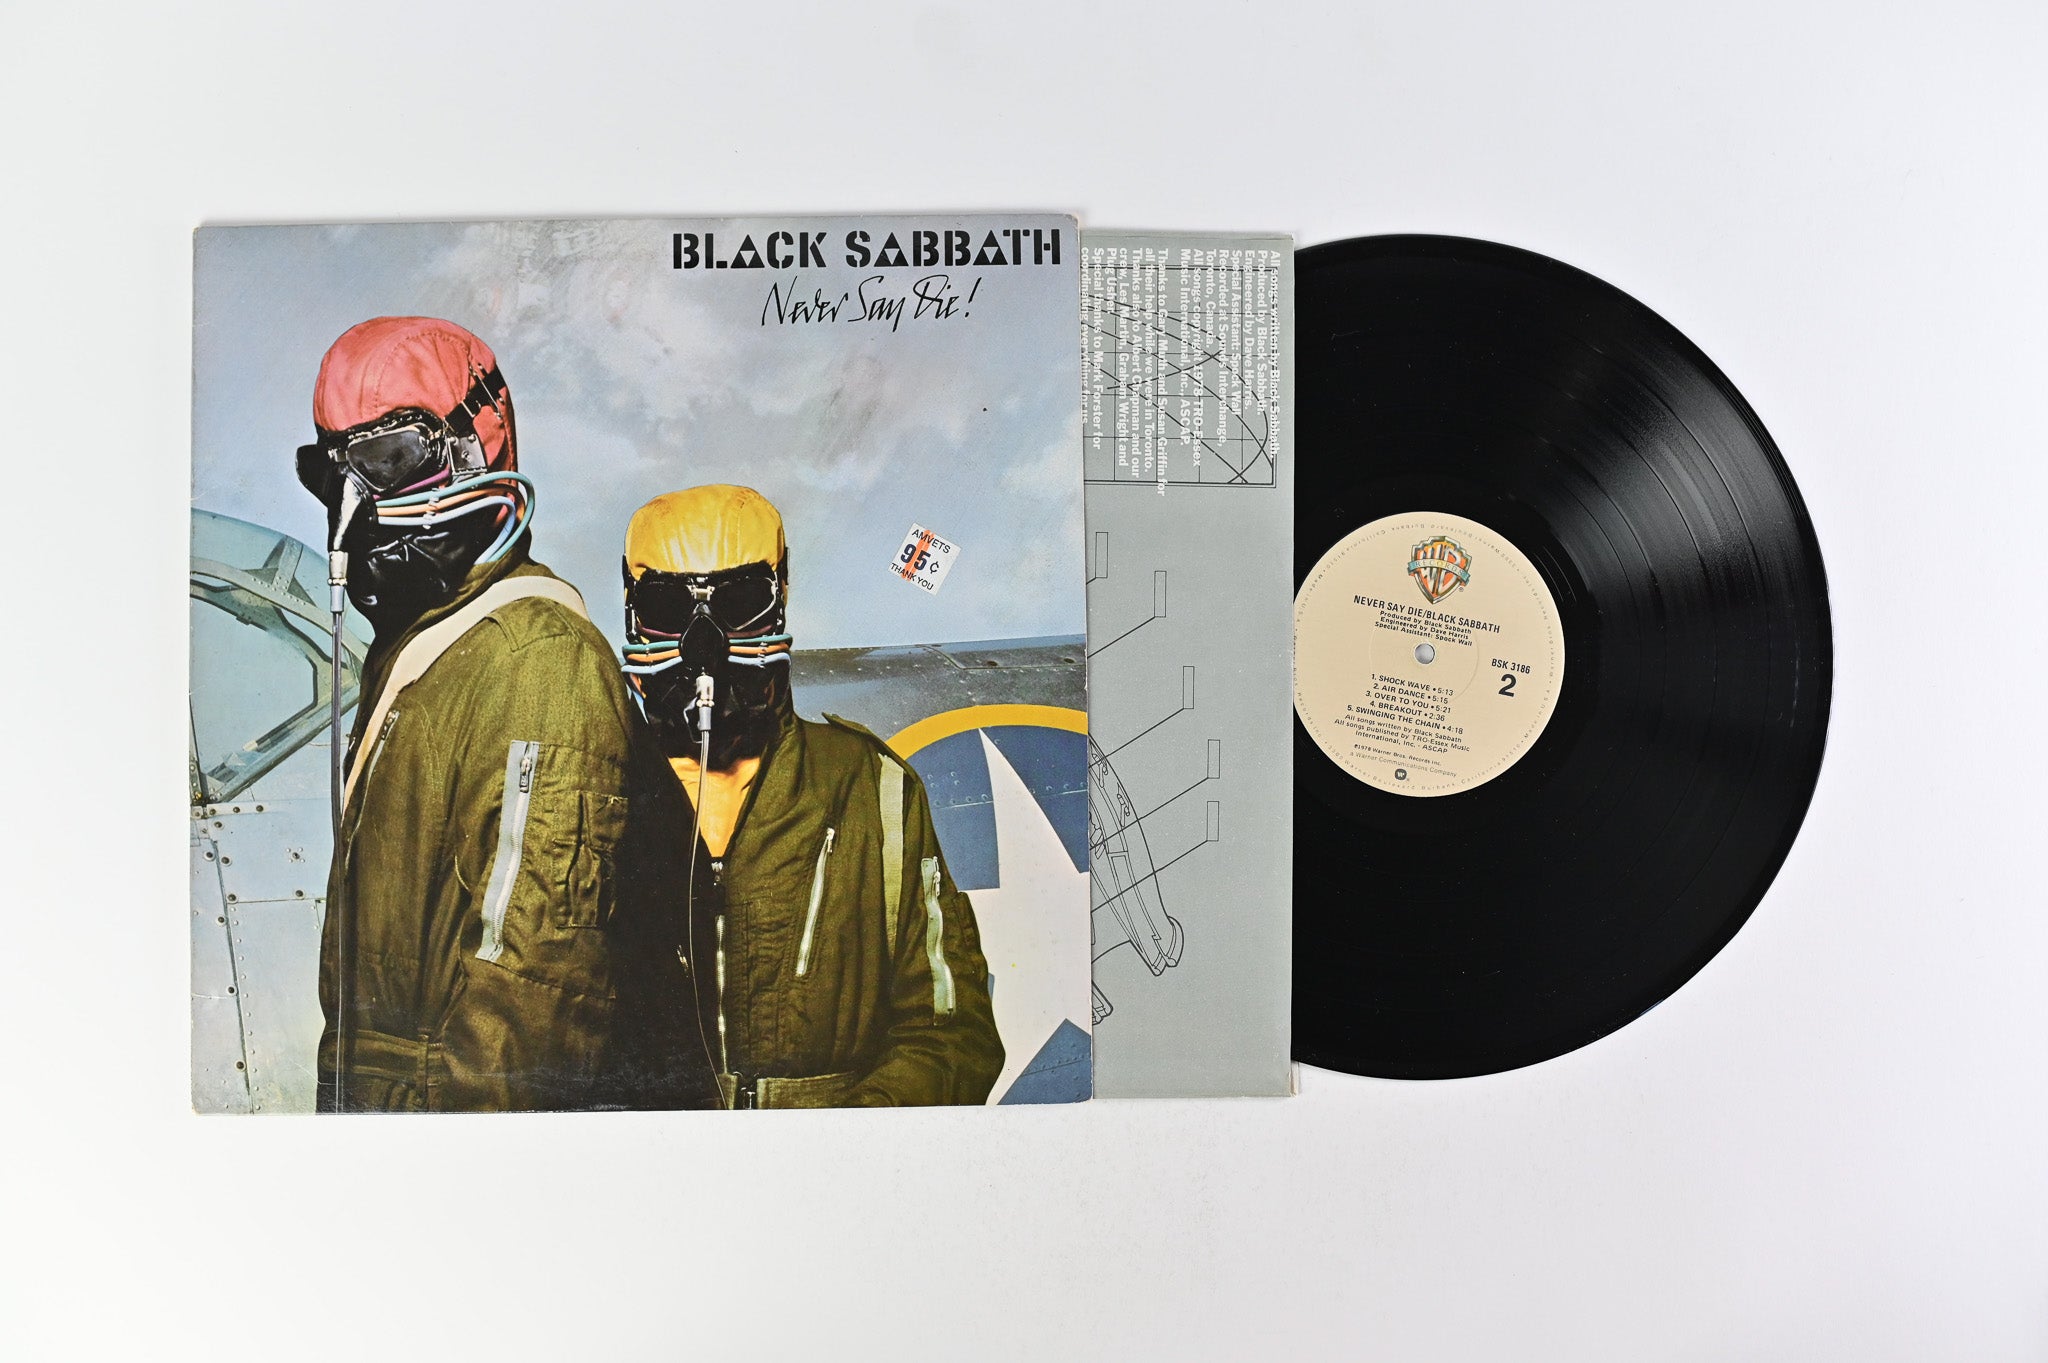 Black Sabbath - Never Say Die! on Warner Bros. Records